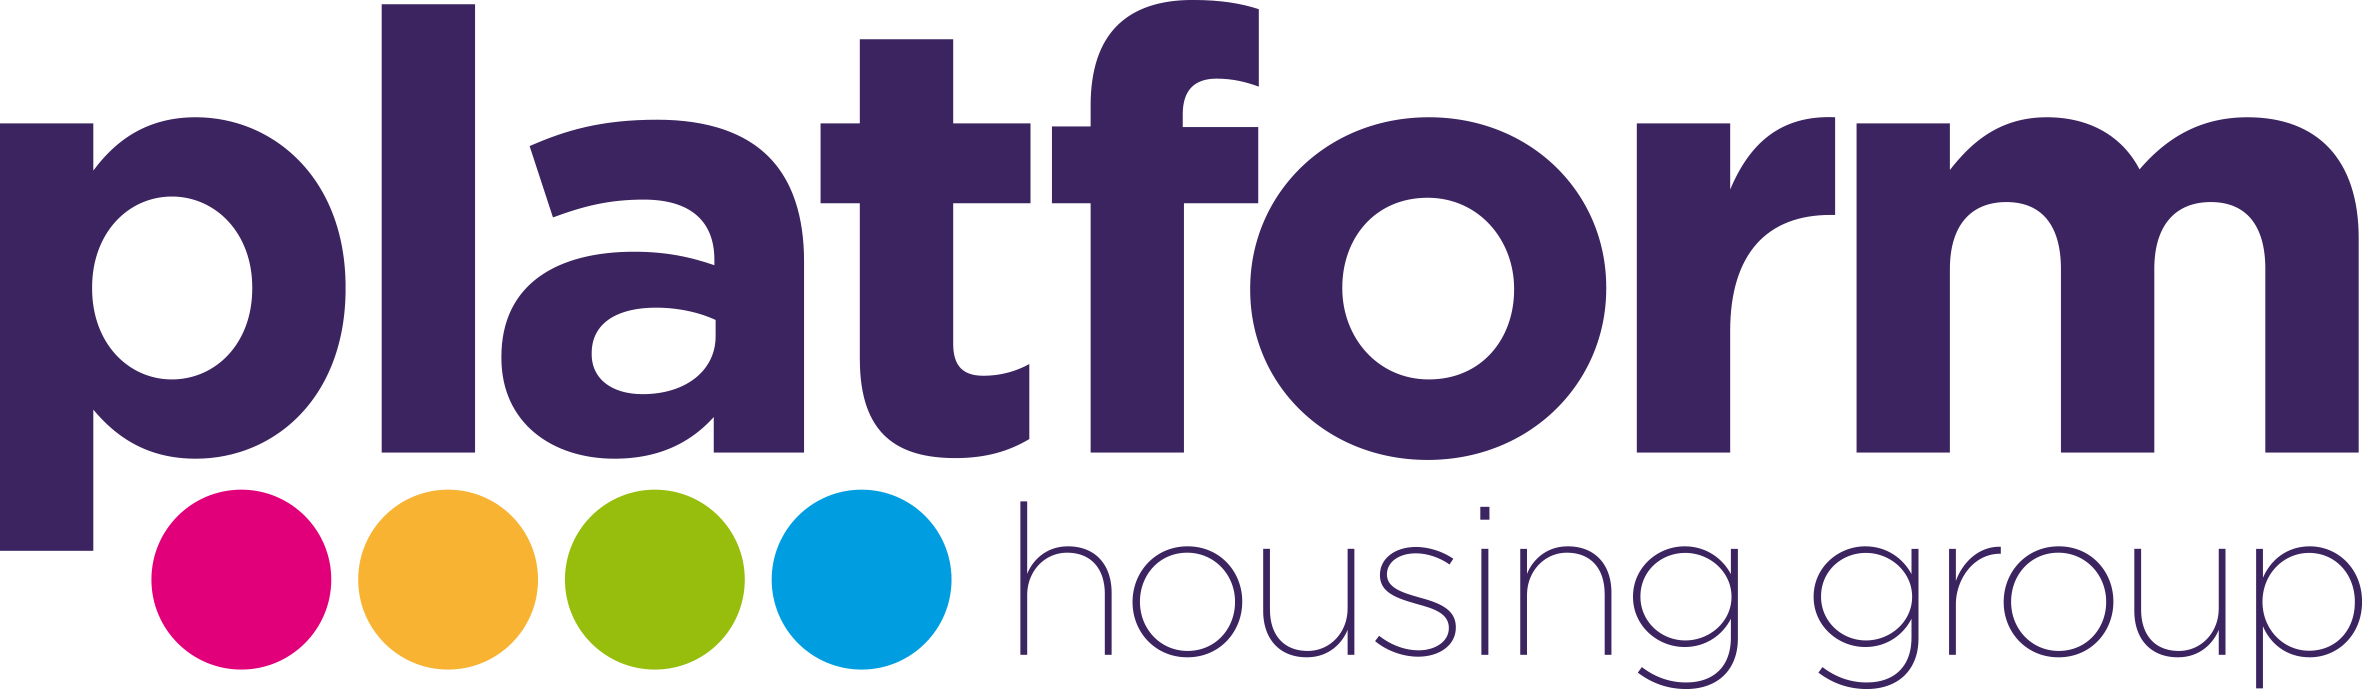 Platform_Housing_Group_logo